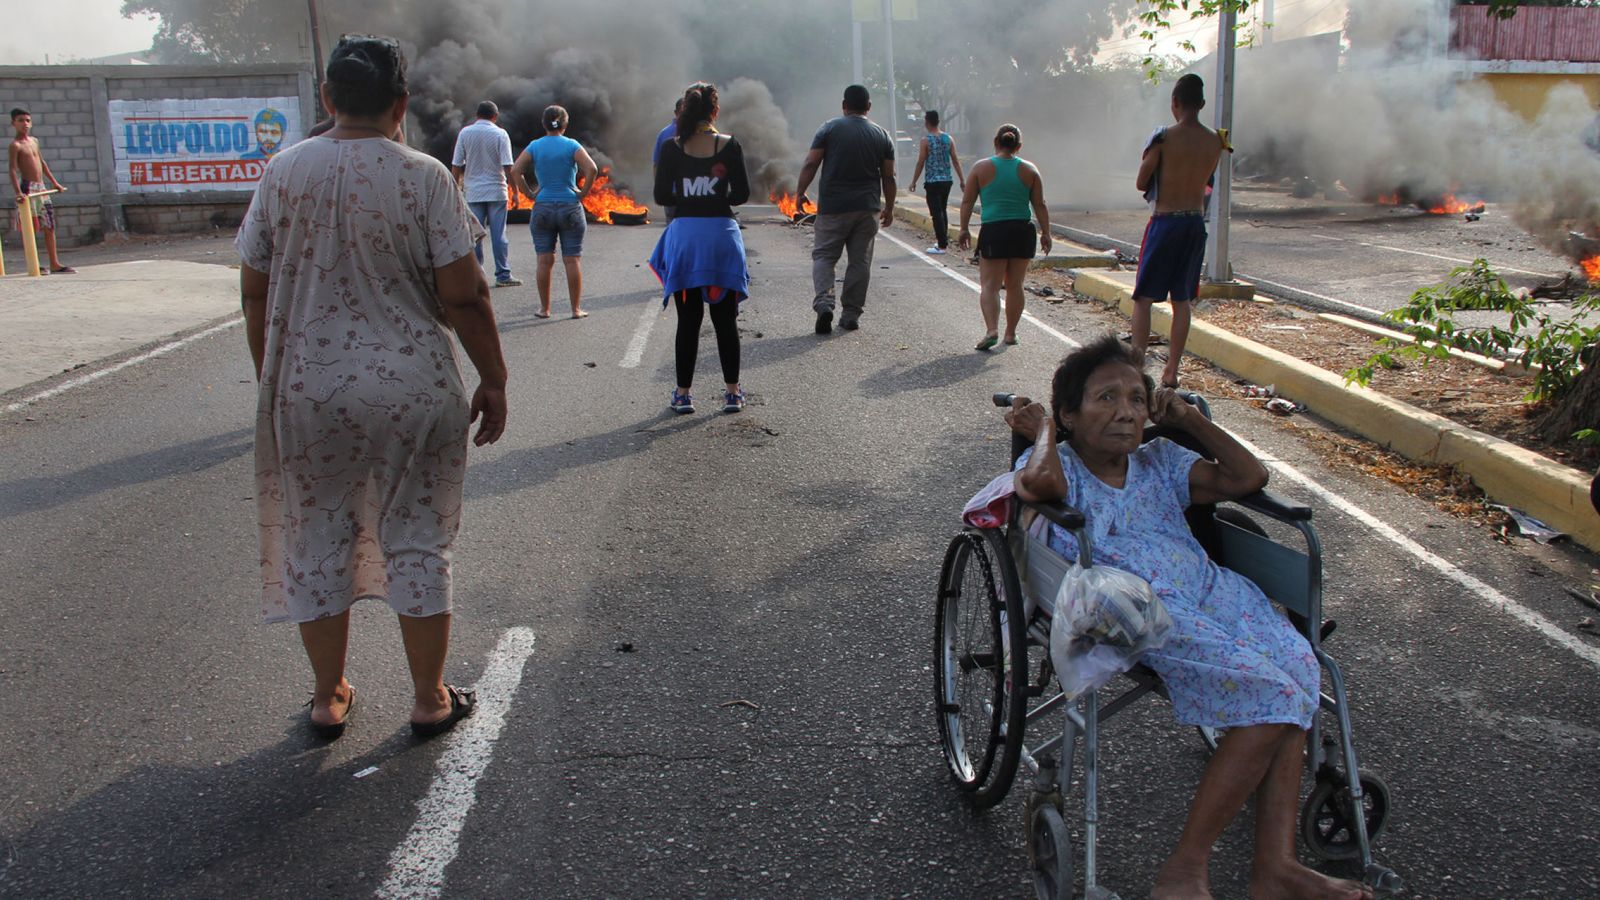 Foto: Un grupo de personas observa un corte de carretera durante una protesta por los cortes de energía en Maracaibo, Venezuela, el 26 de abril de 2016 (EFE)